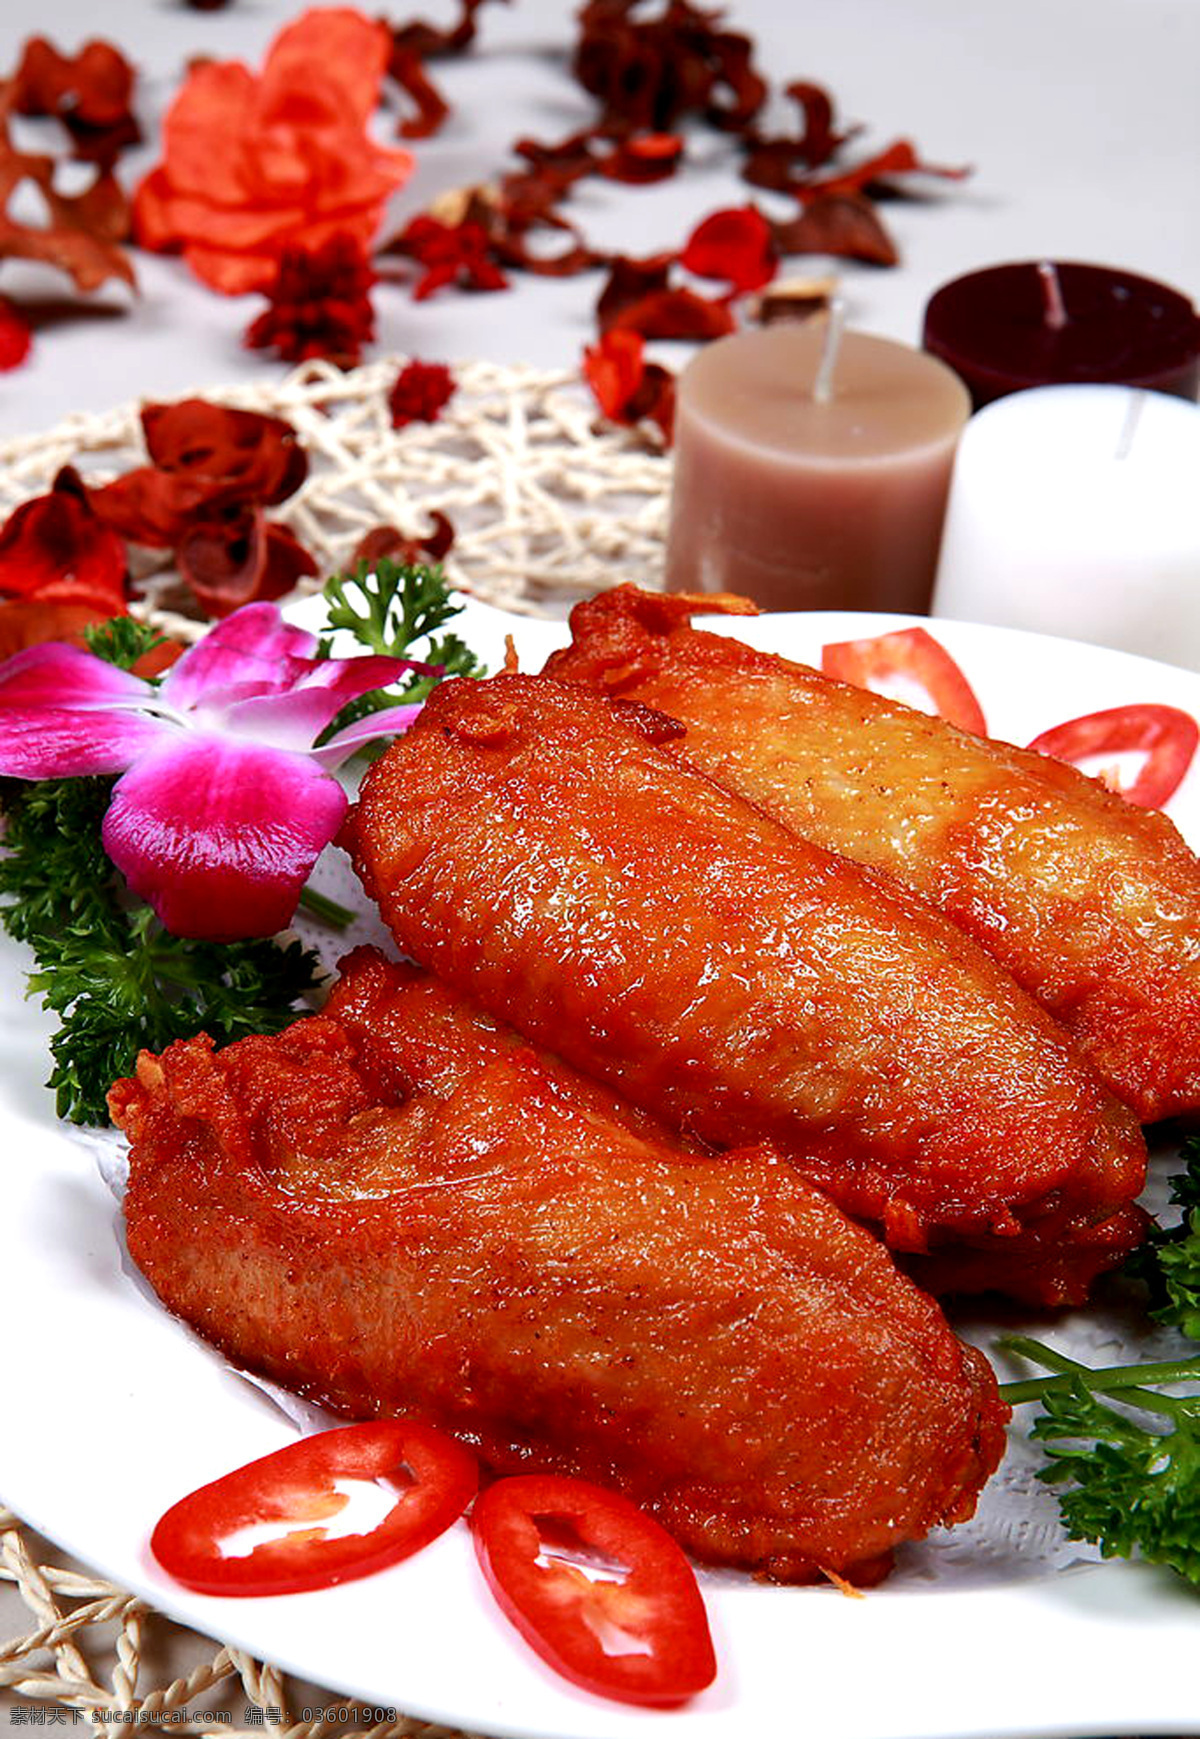 烧烤 菜 美食 鸡肉 美味 鸡翅膀 食品 家禽 新鲜 菜品图 餐饮美食 传统美食